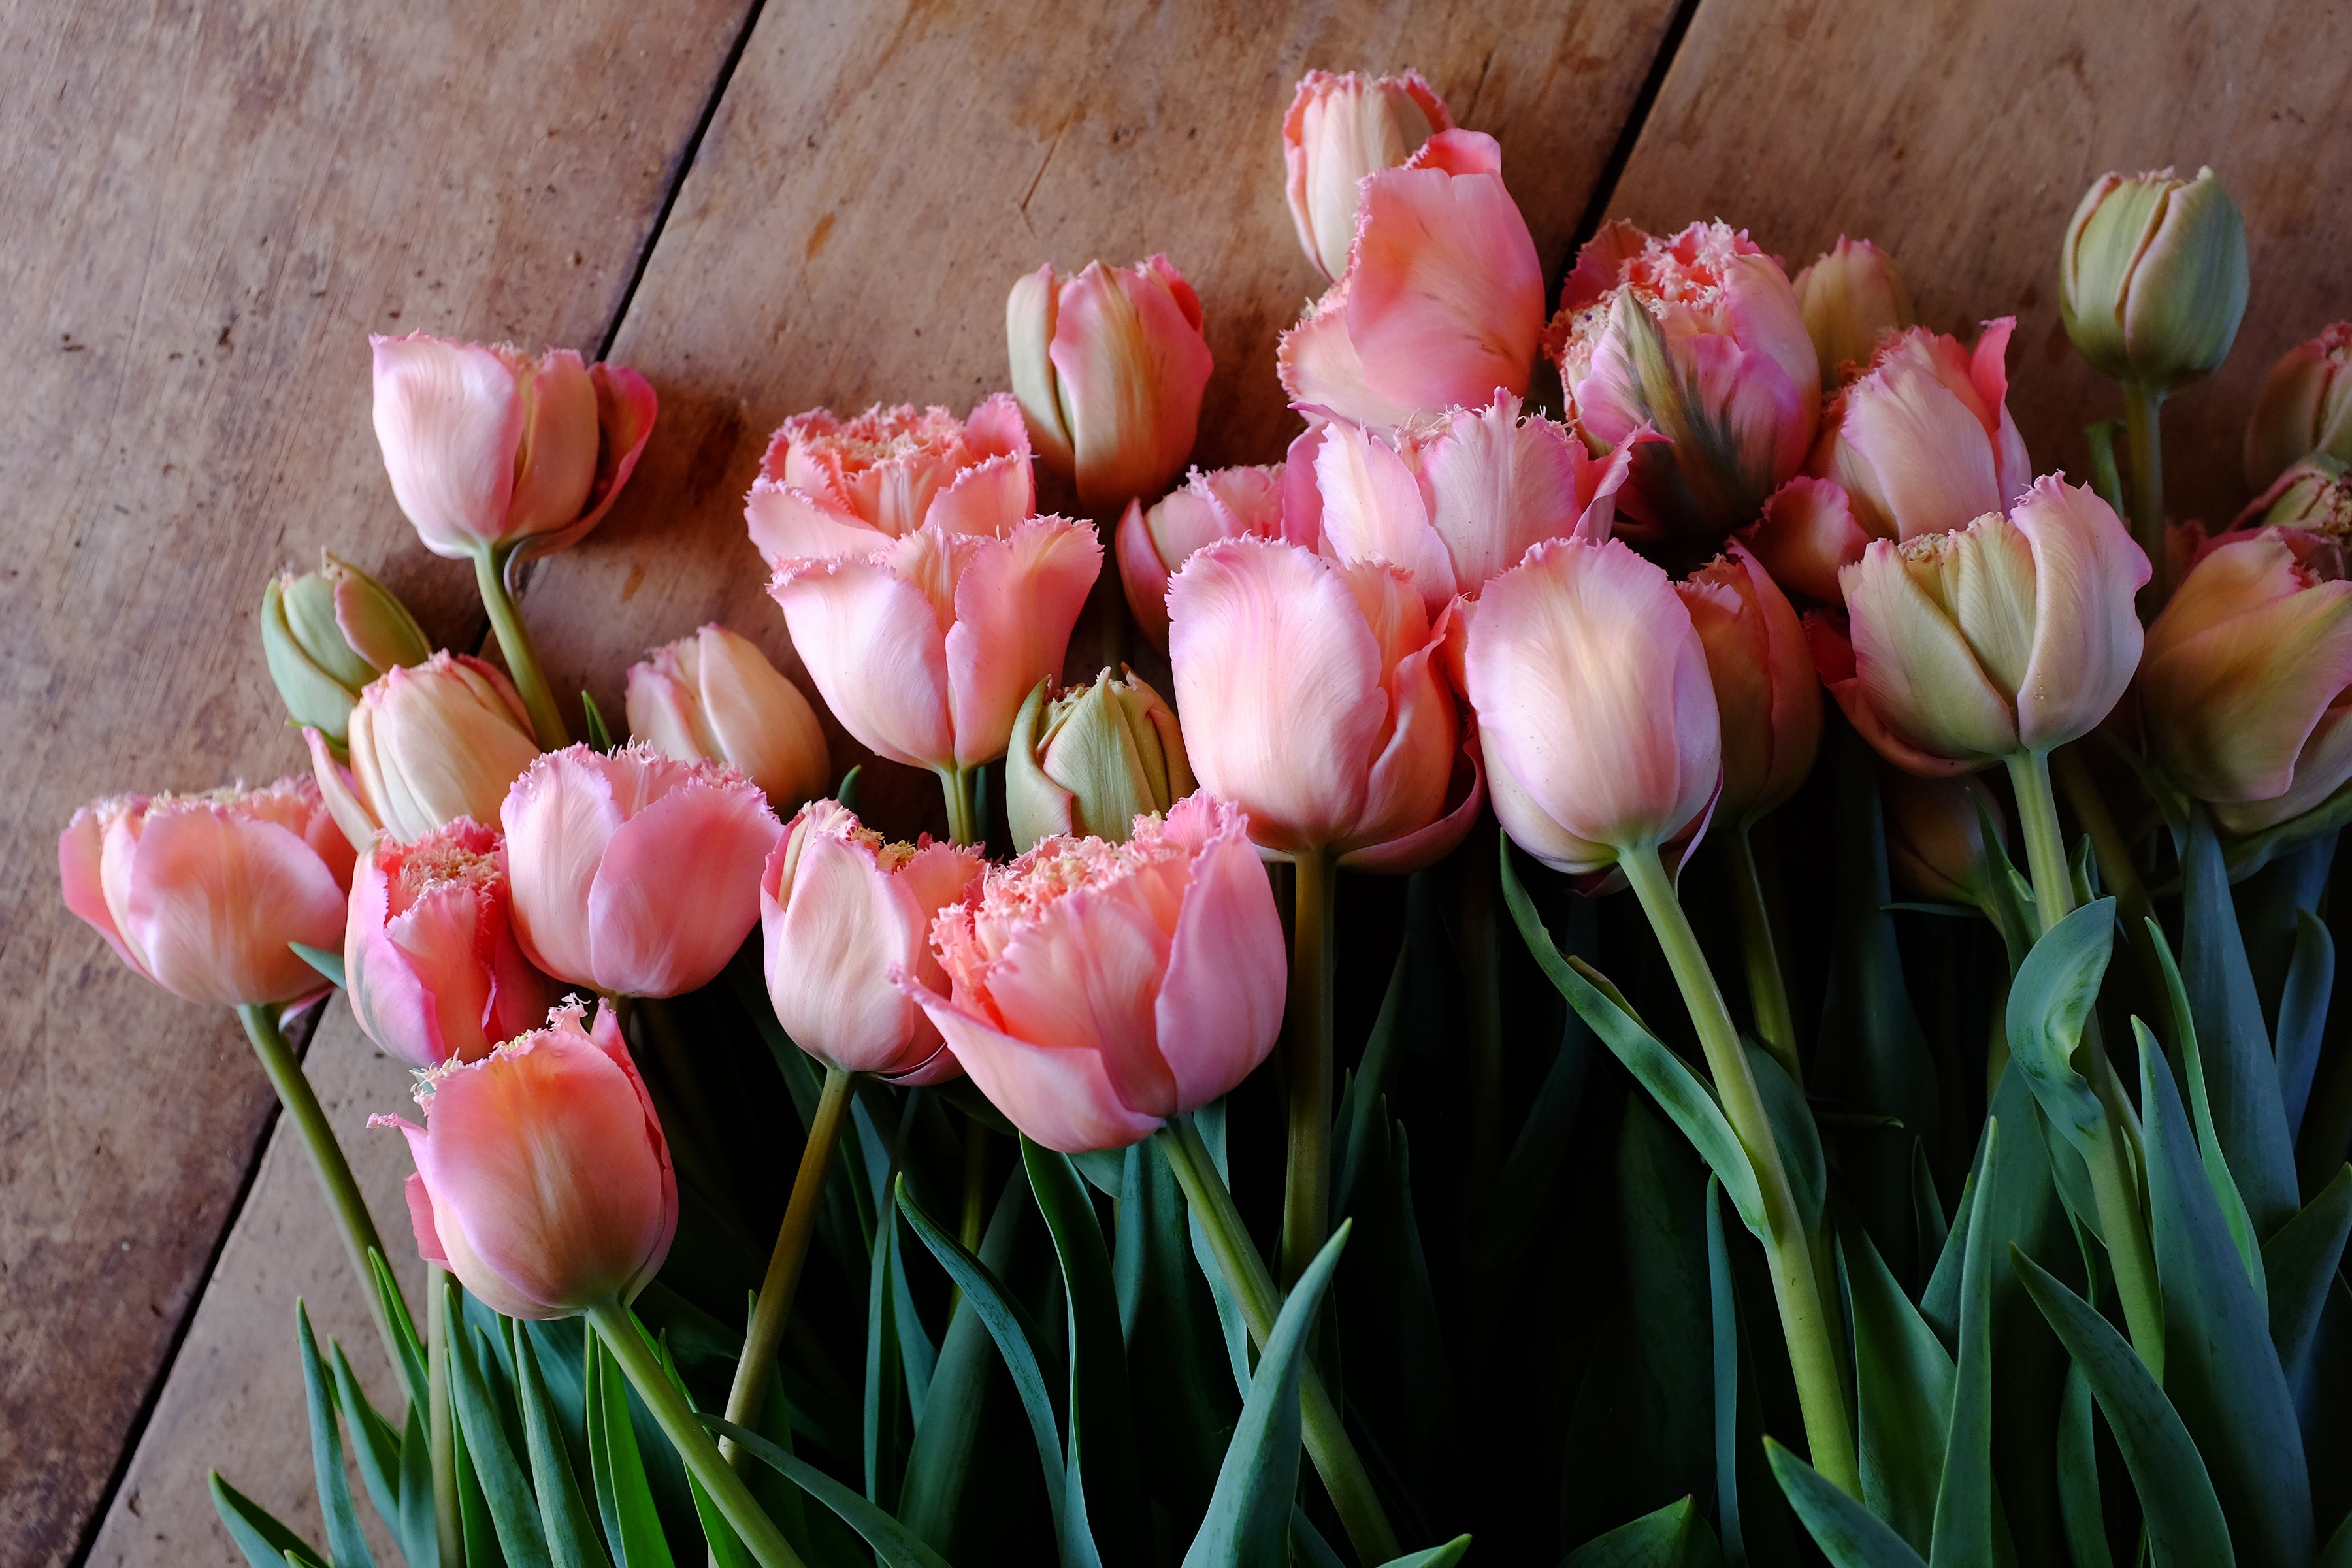 Pink Magic Tulip Bulbs